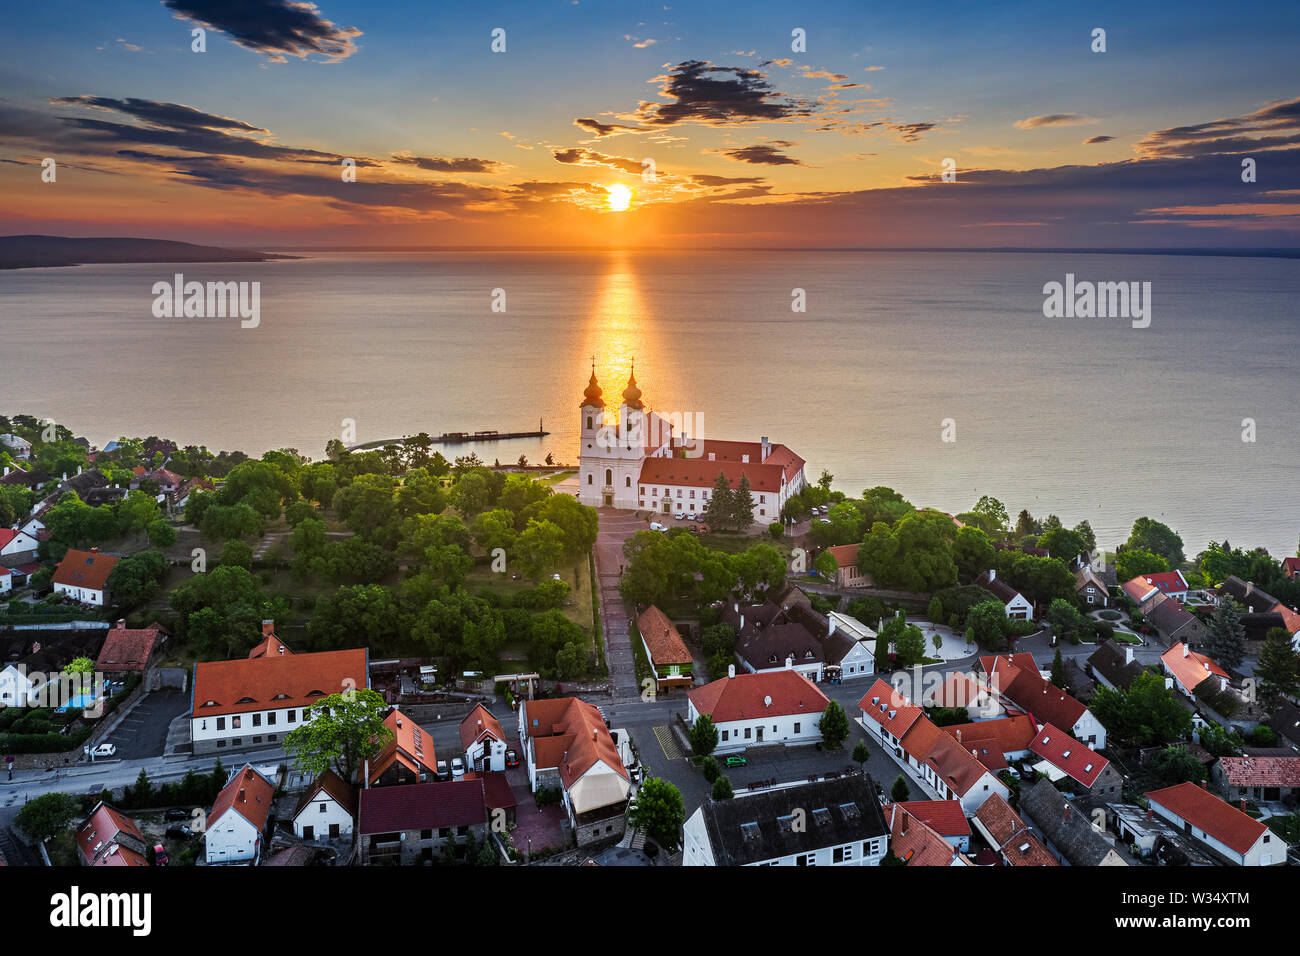 Tihany, Ungheria - Antenna vista sullo skyline del famoso monastero benedettino di Tihany (Tihany Abbey) con un bel cielo colorato e nuvole di sunrise Foto Stock